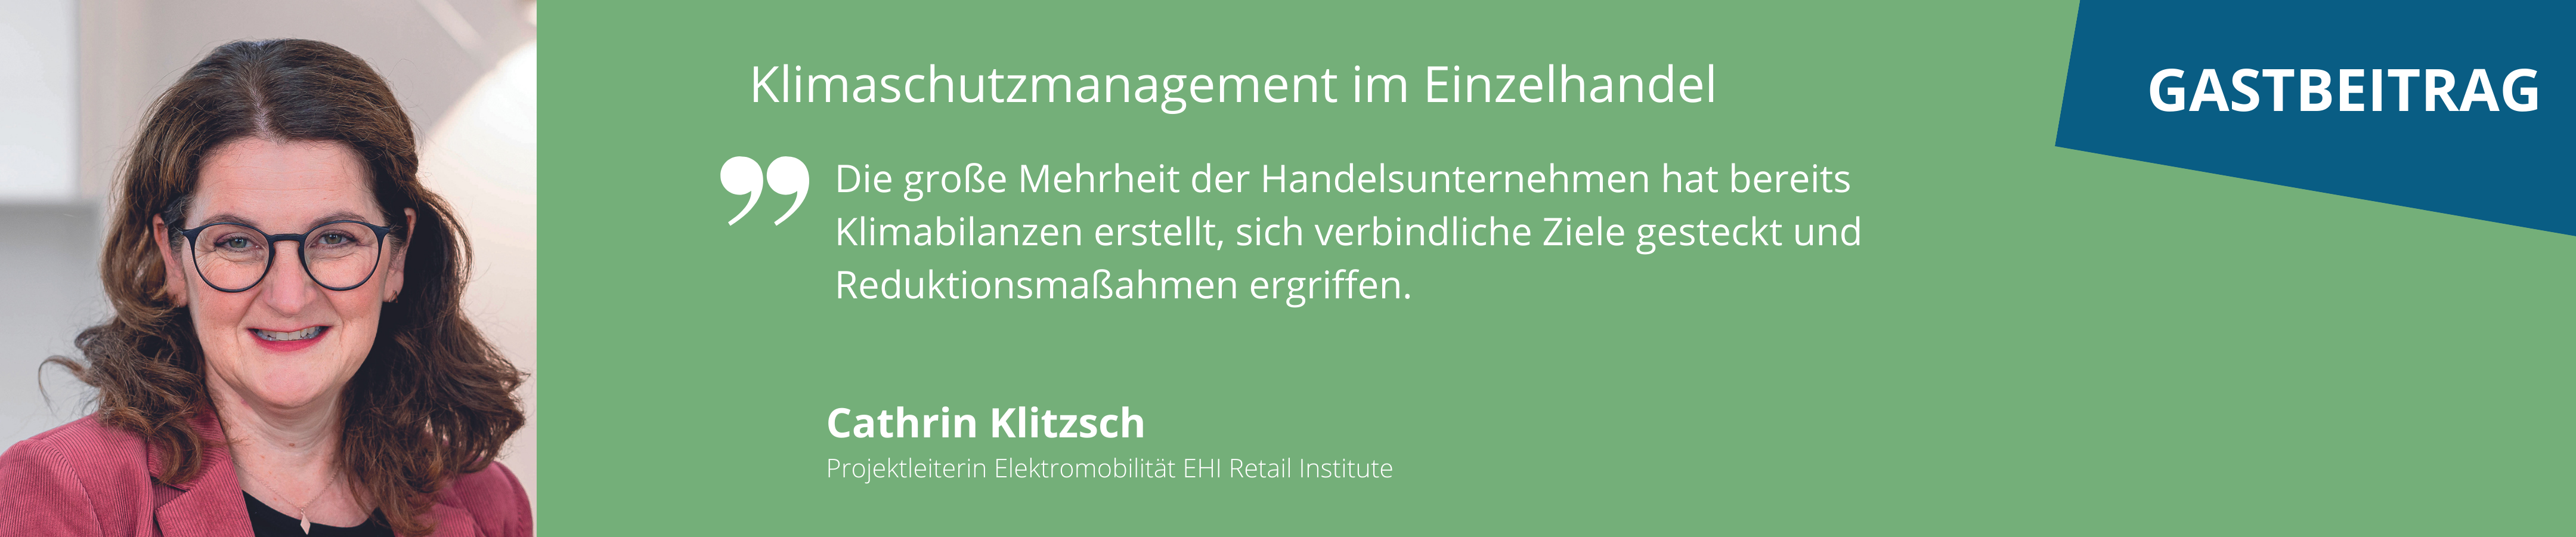 Klimaschutzoffensive-HDE Gastbeitrag Energiemanagement Einzelhandel EHI Retail Institute